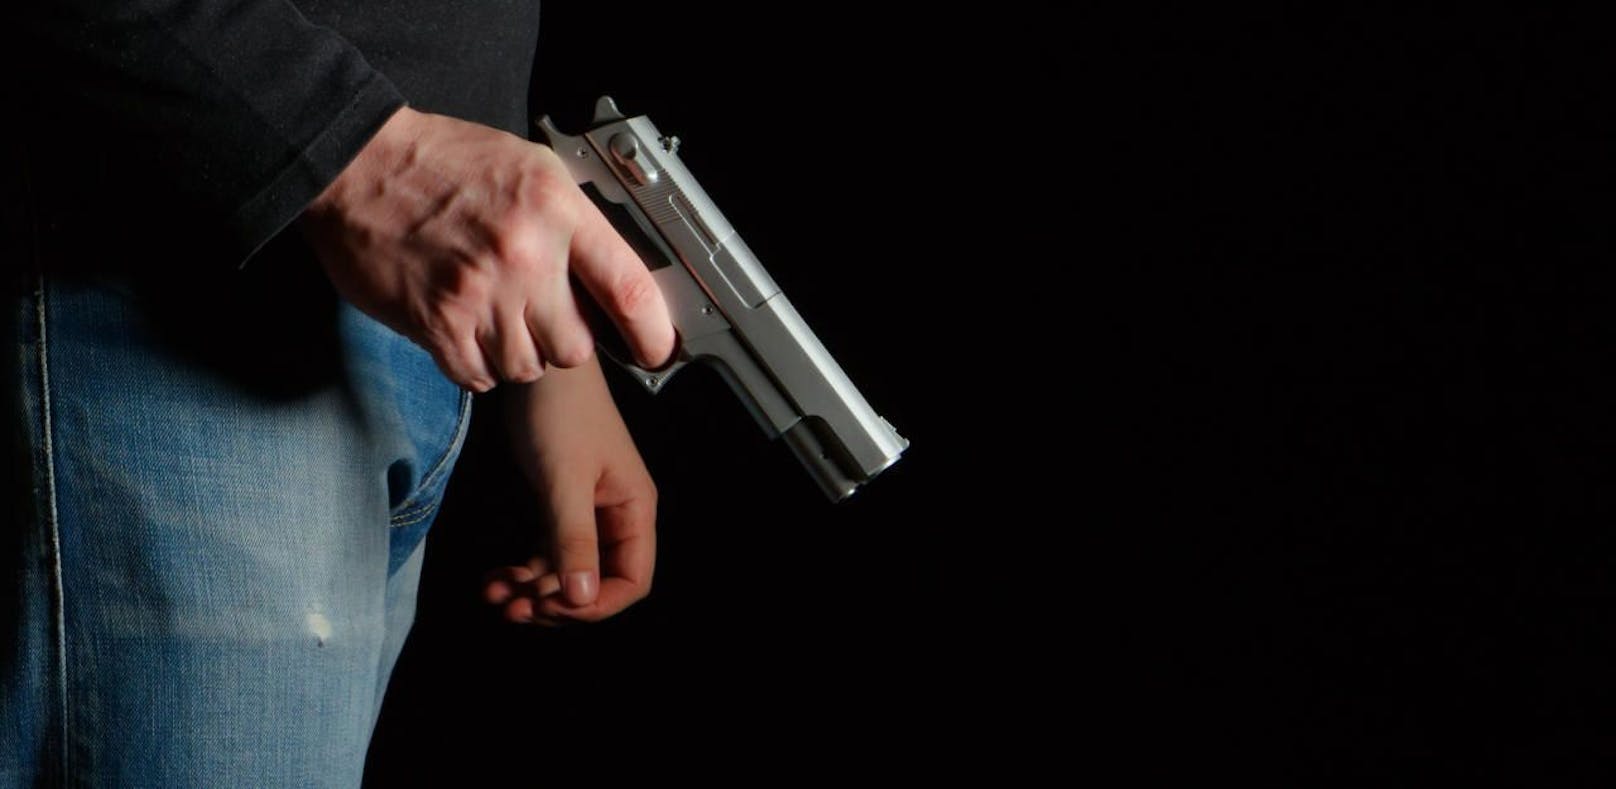 Ein 20-Jähriger soll einen 24-Jährigen mit einer Faustfeuerwaffe bedroht haben. (Symbolbild)